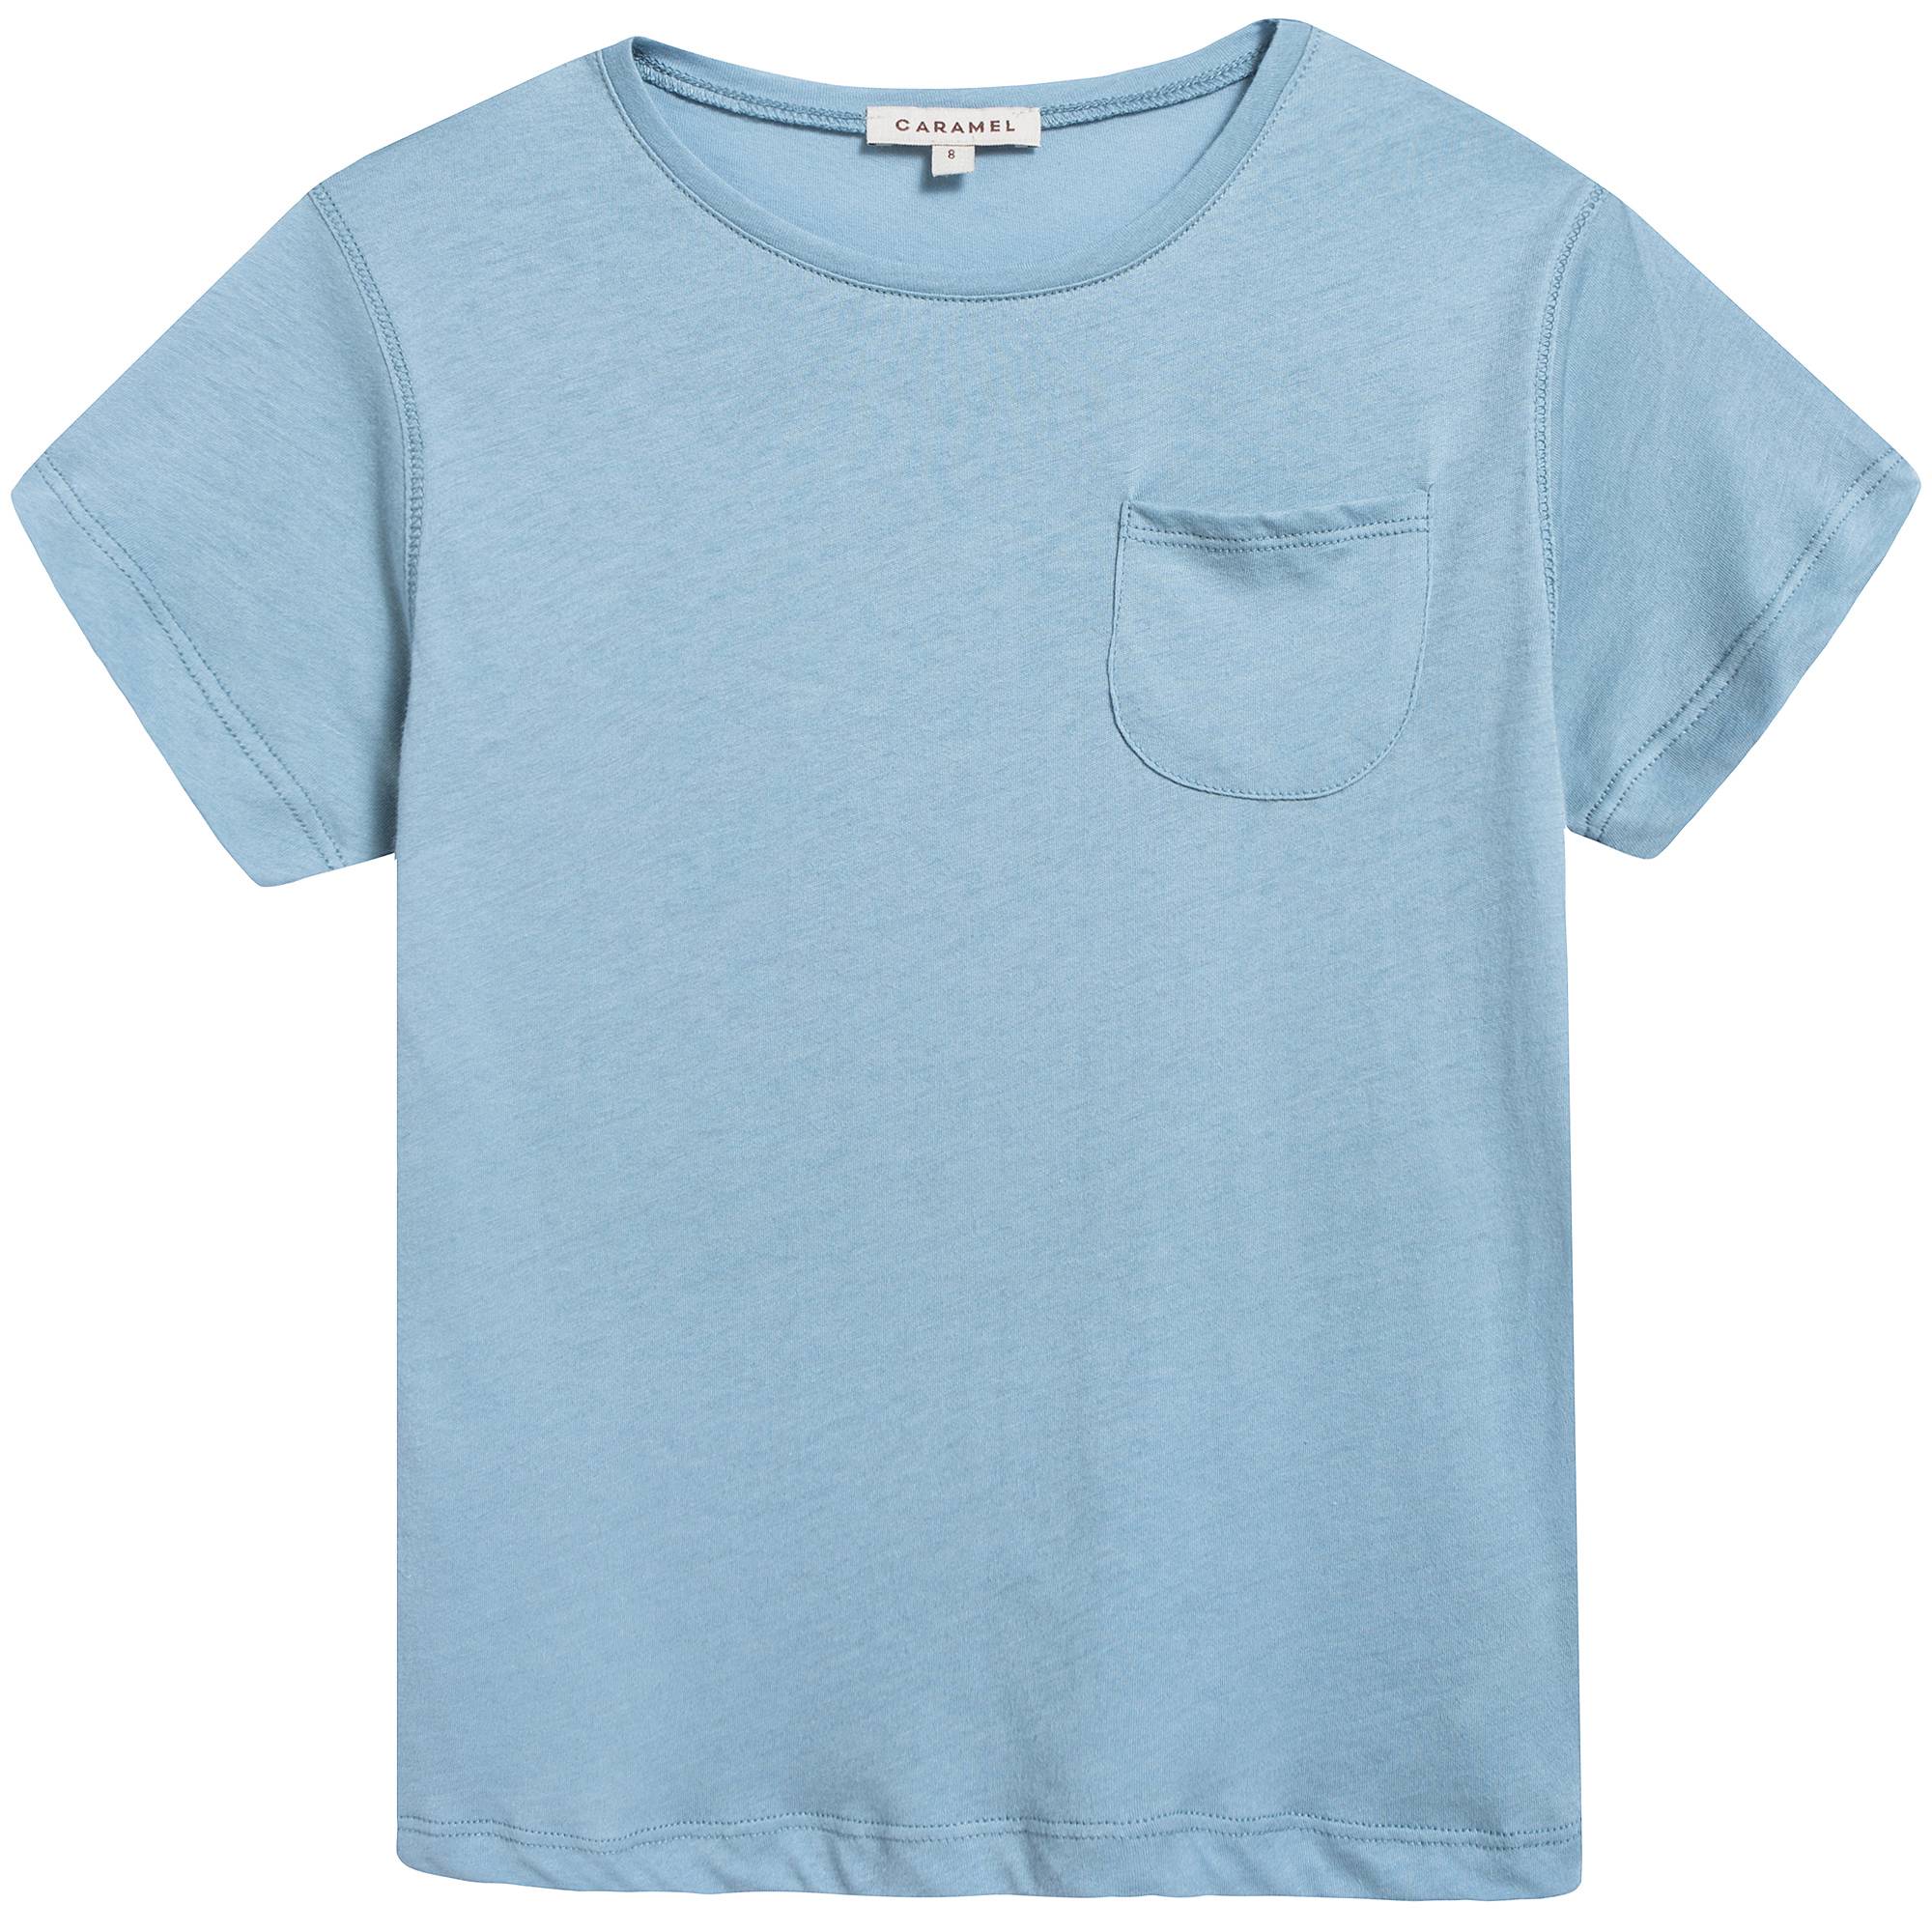 Boys & Girls Cornflower  Cotton  Jersey  T-shirt